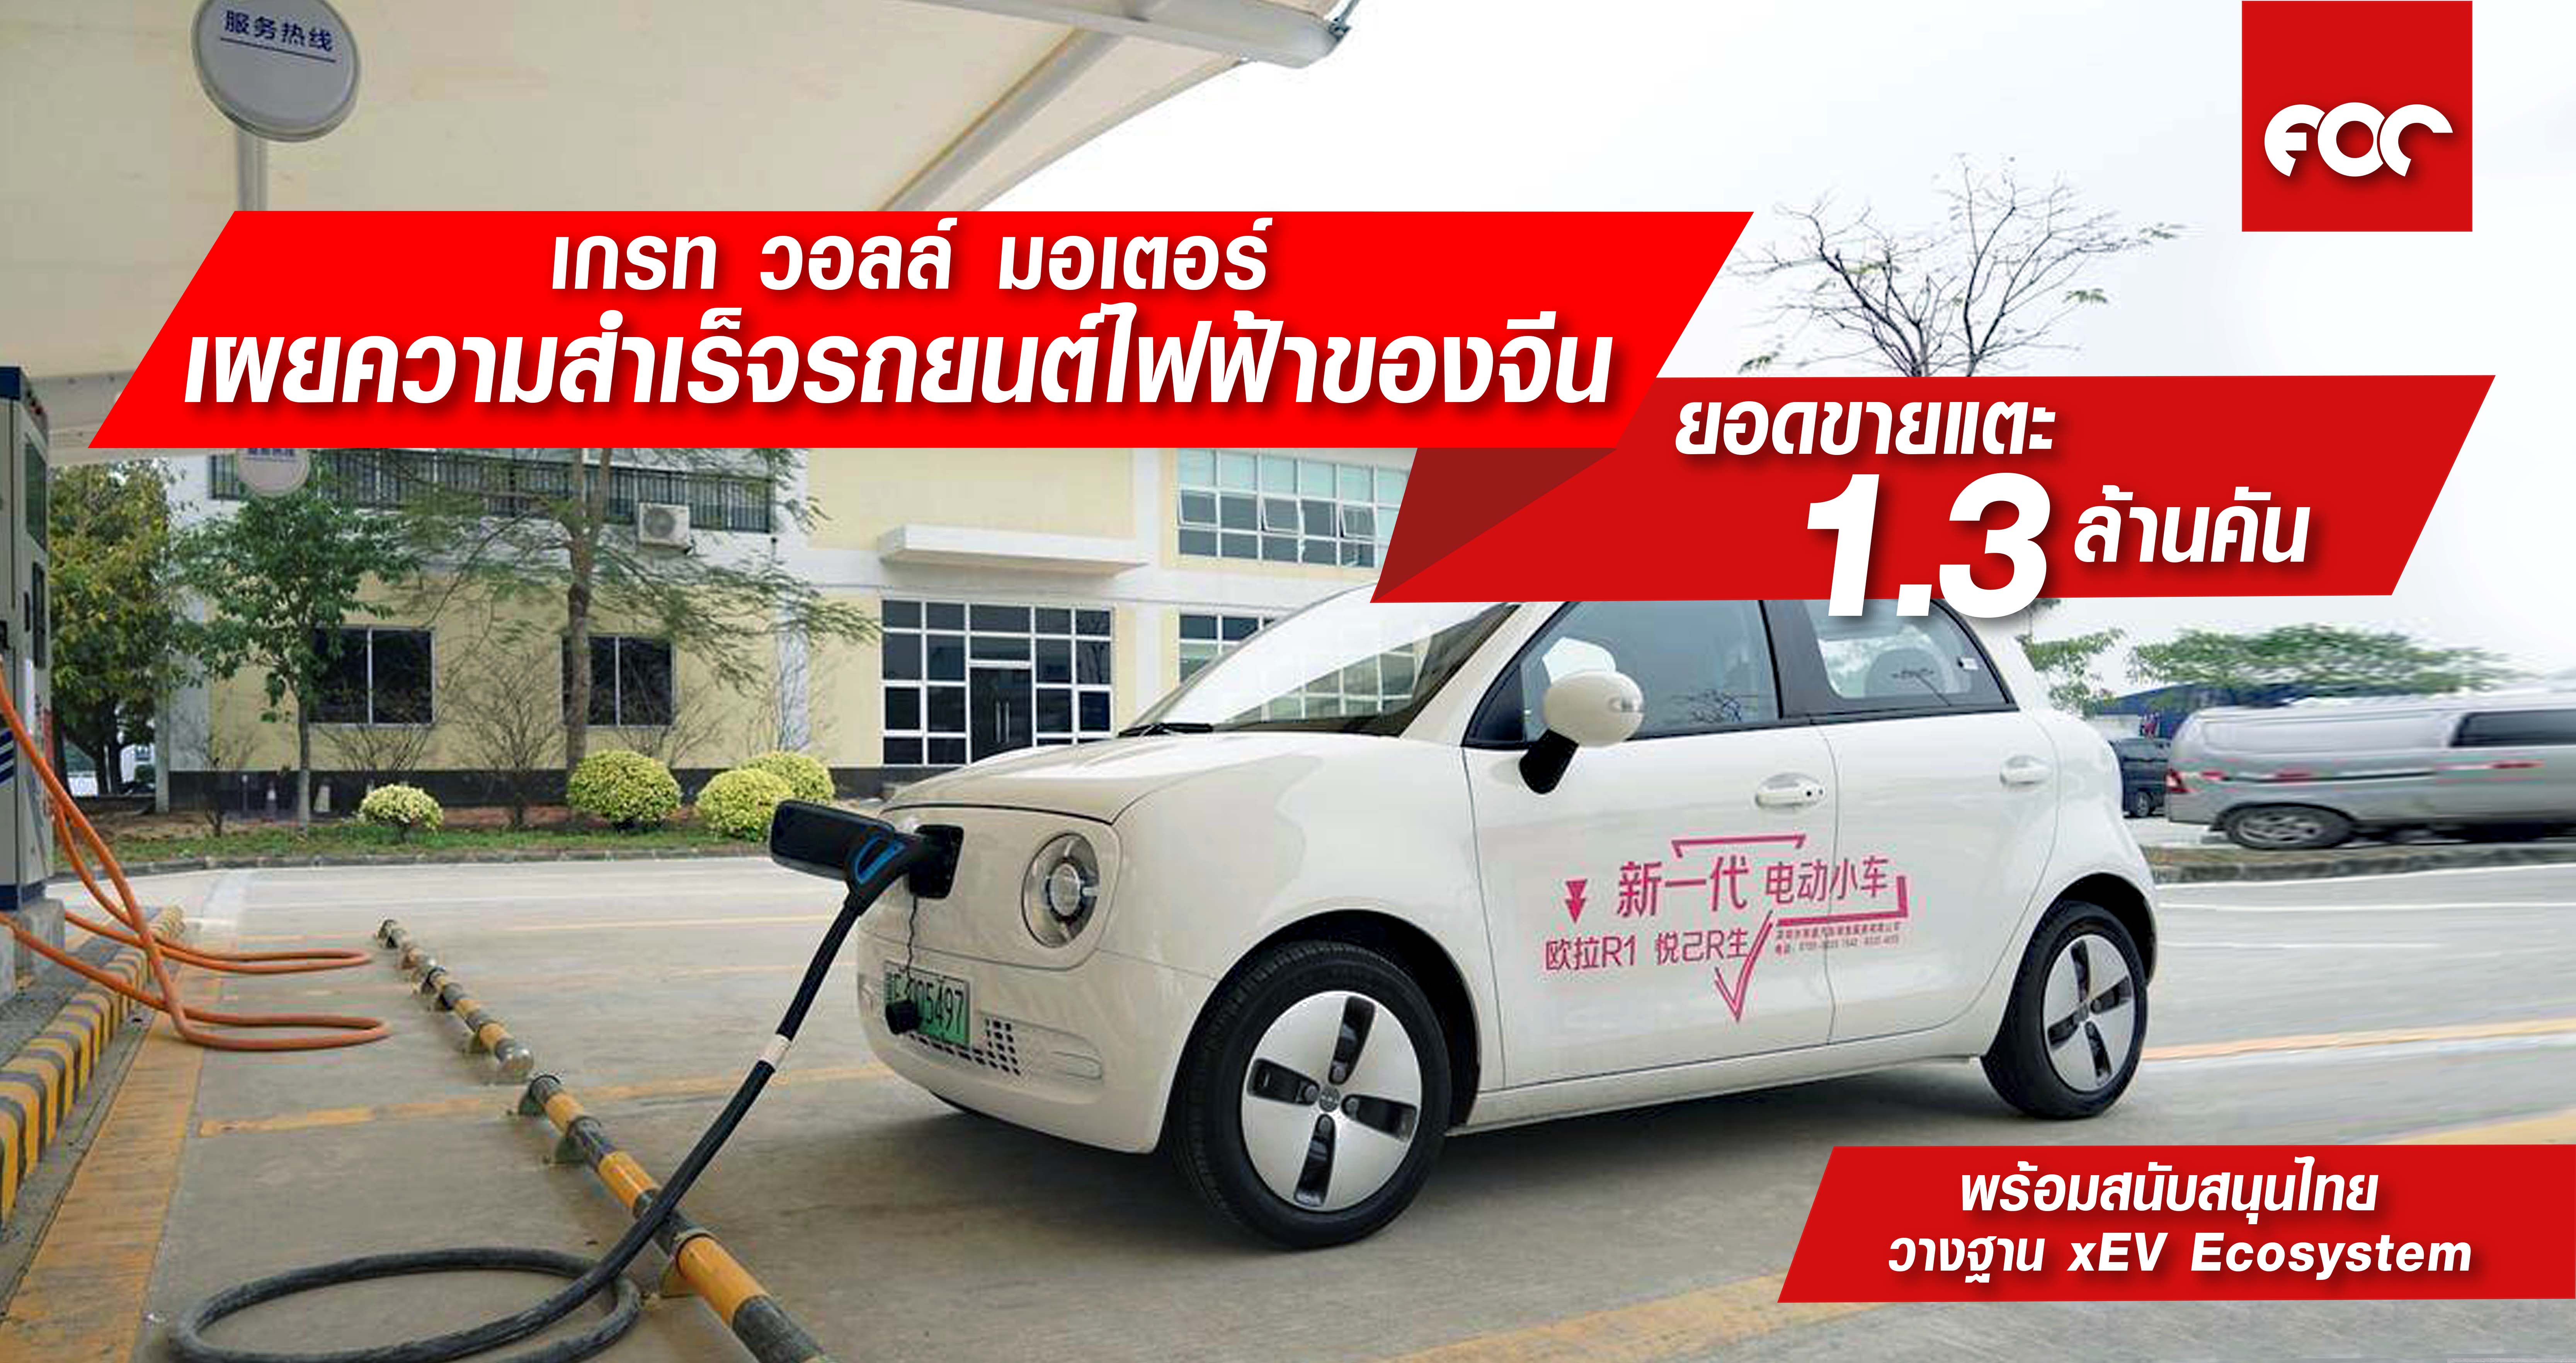 เกรท วอลล์ มอเตอร์ เผยกรณีศึกษาความสำเร็จรถยนต์ไฟฟ้าของจีน พร้อมสนับสนุนประเทศไทย ร่วมวางรากฐาน xEV Ecosystem อย่างยั่งยืน